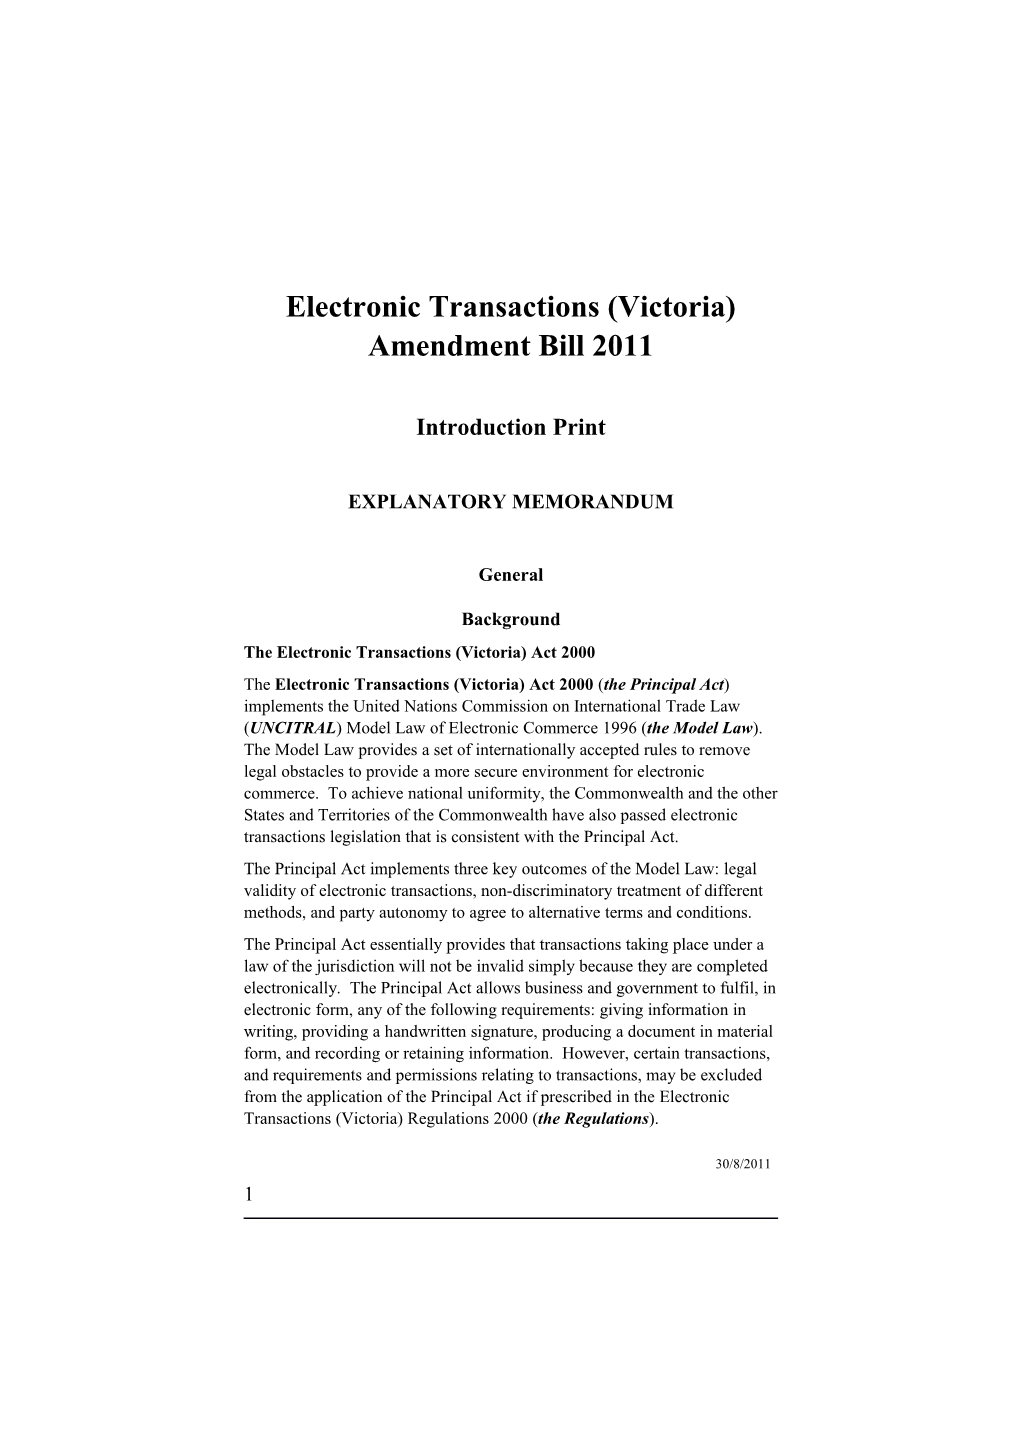 Electronic Transactions (Victoria) Amendment Bill 2011